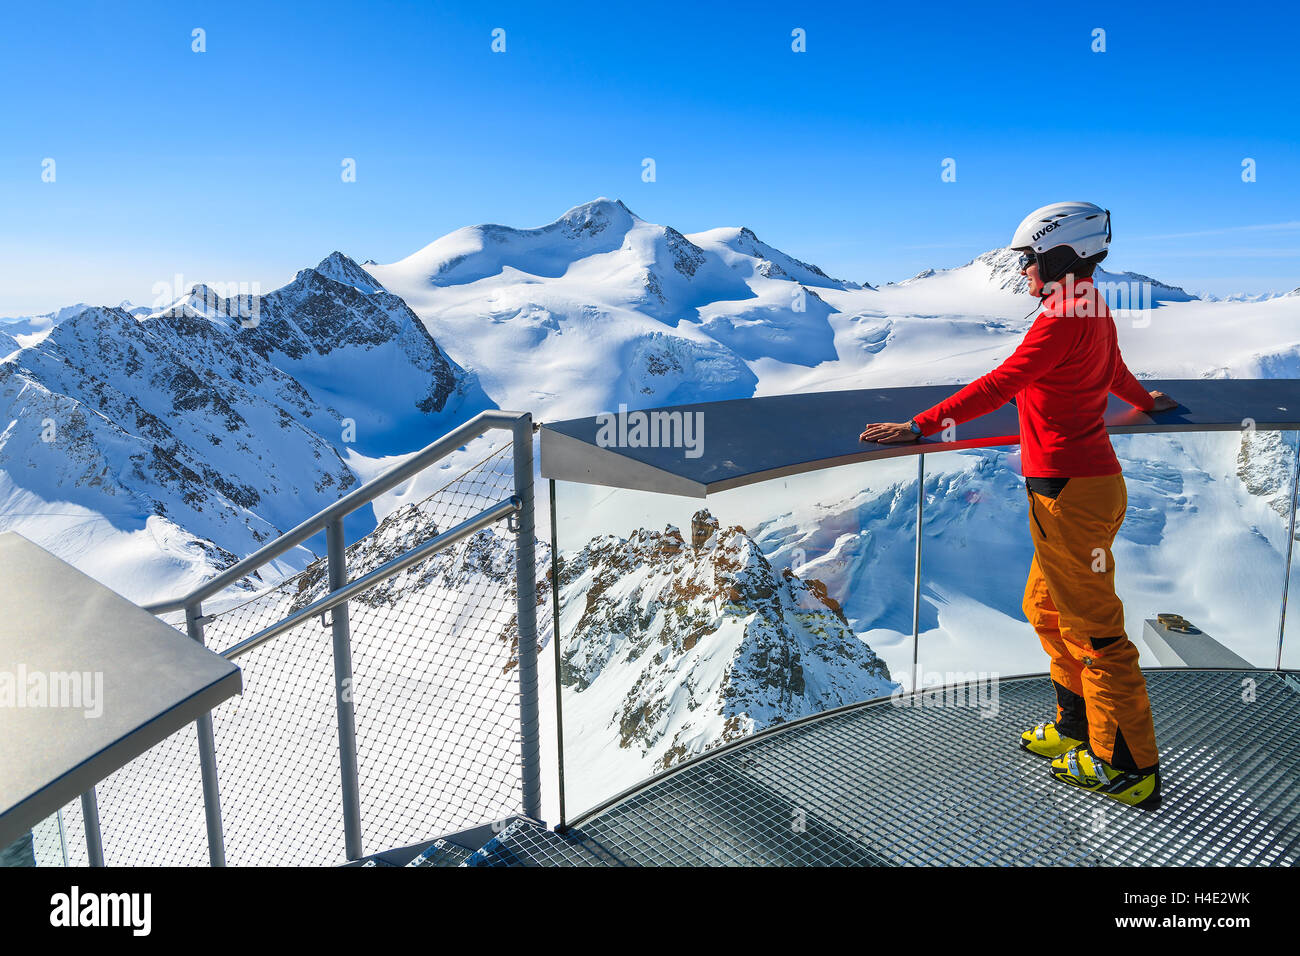 Station de SKI PITZTAL, AUTRICHE - MAR 29, 2014 : Woman standing on platform skieur à la montagne au Wildspitze, deuxième plus haut sommet d'Autriche. Mars est le plus beau mois pour les vacances de ski. Banque D'Images